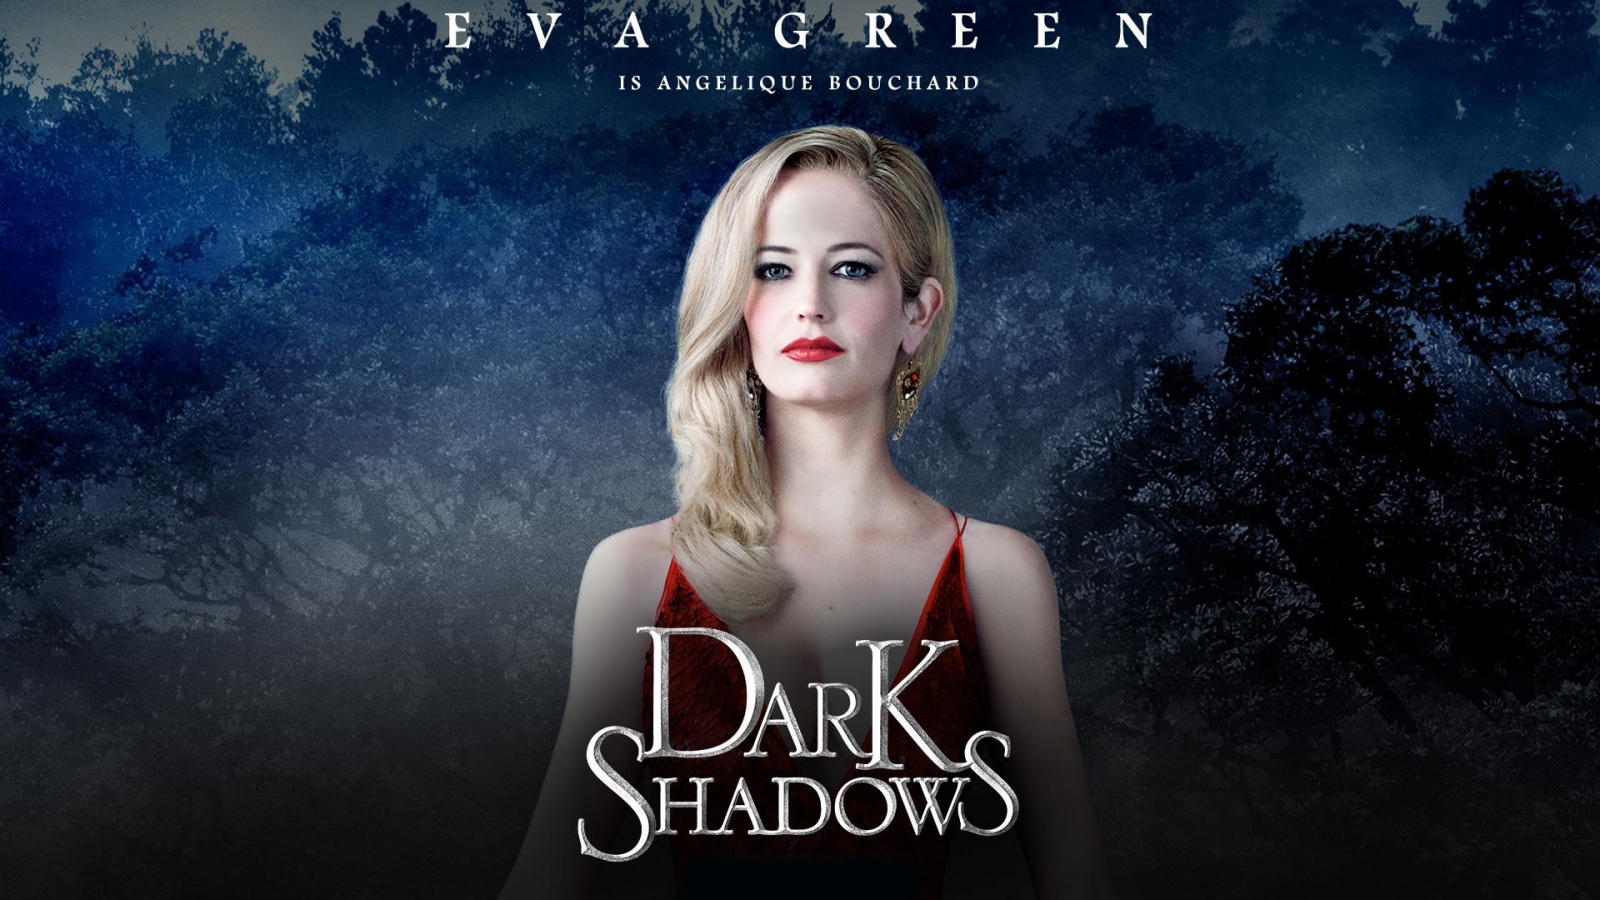 Dark Shadows Eva Green for 1600 x 900 HDTV resolution